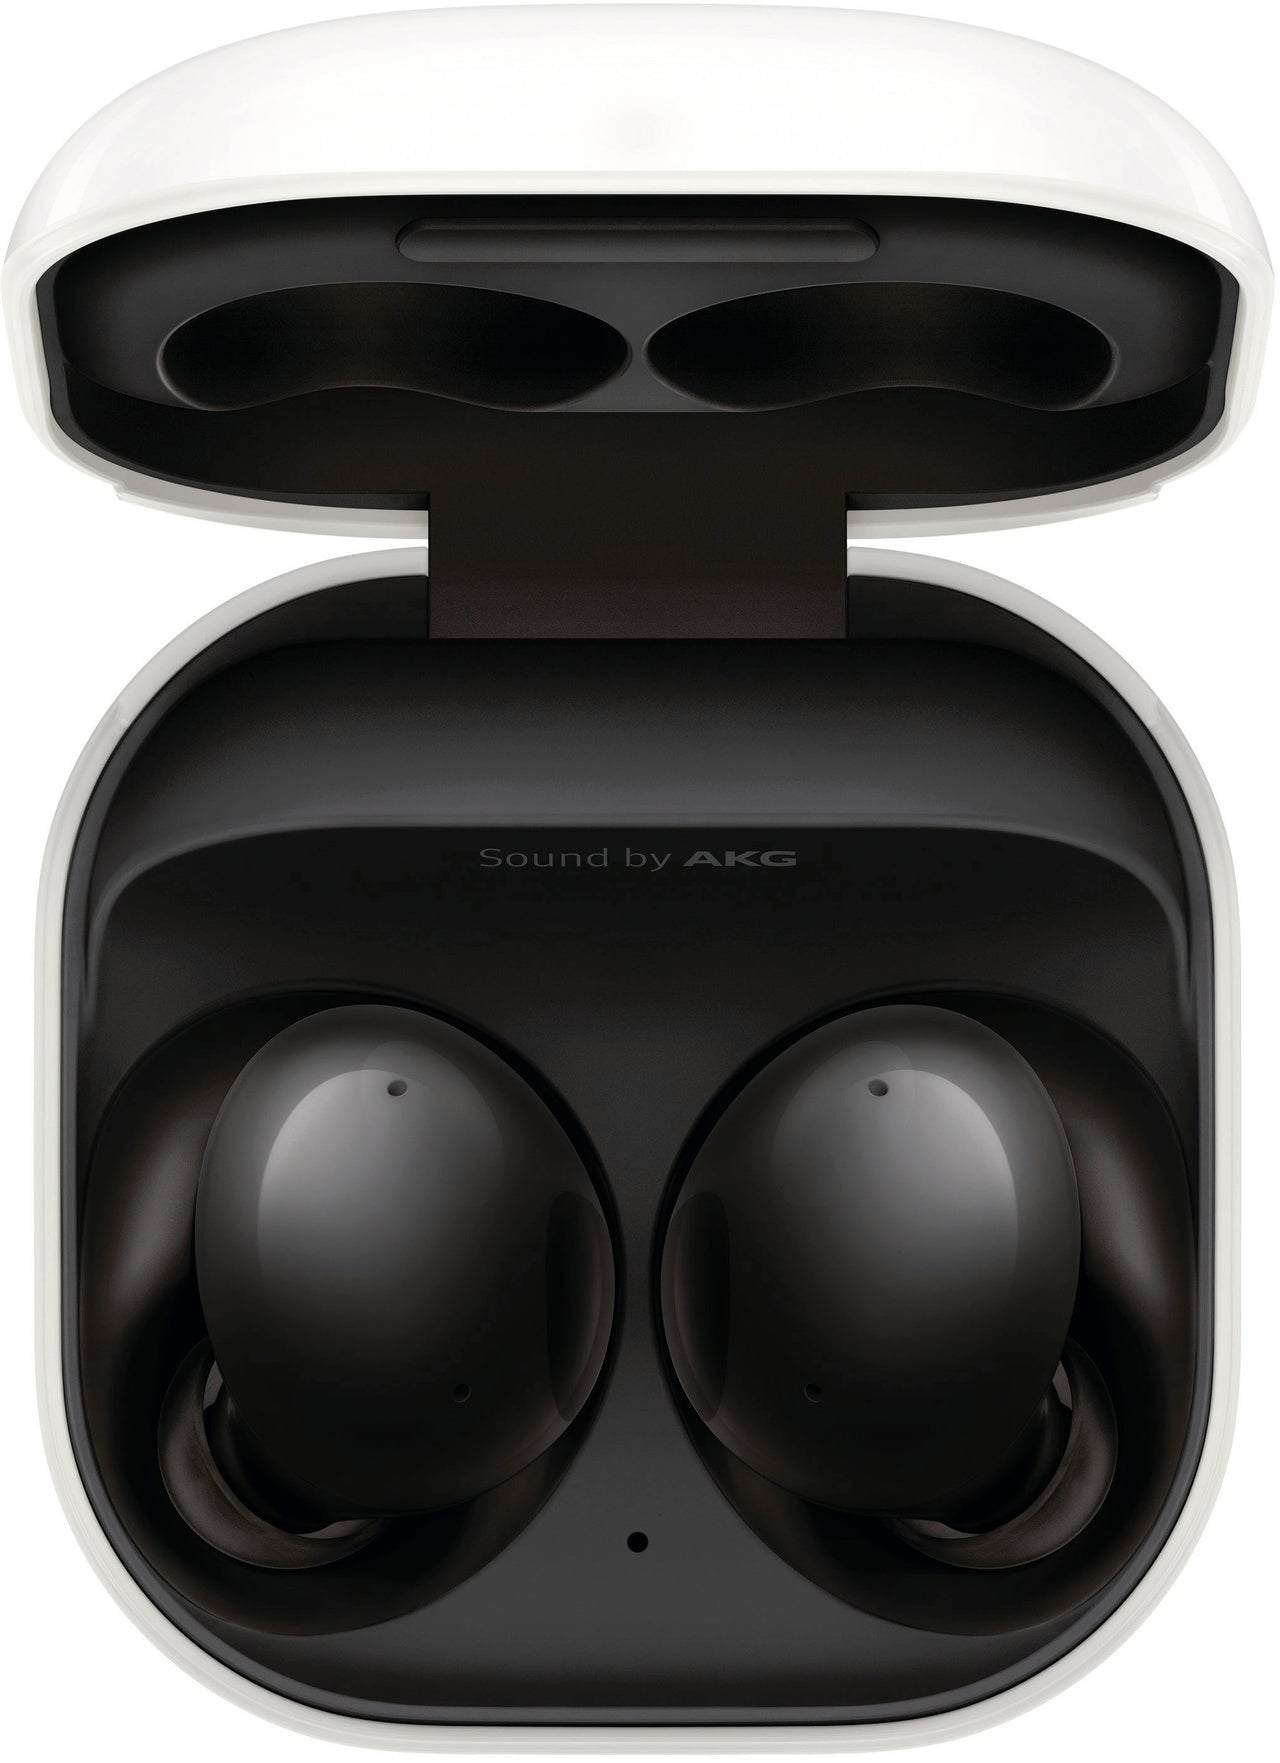 Samsung - Geek Squad Certified Refurbished Galaxy Buds2 True Wireless Earbud Headphones - Phantom Black